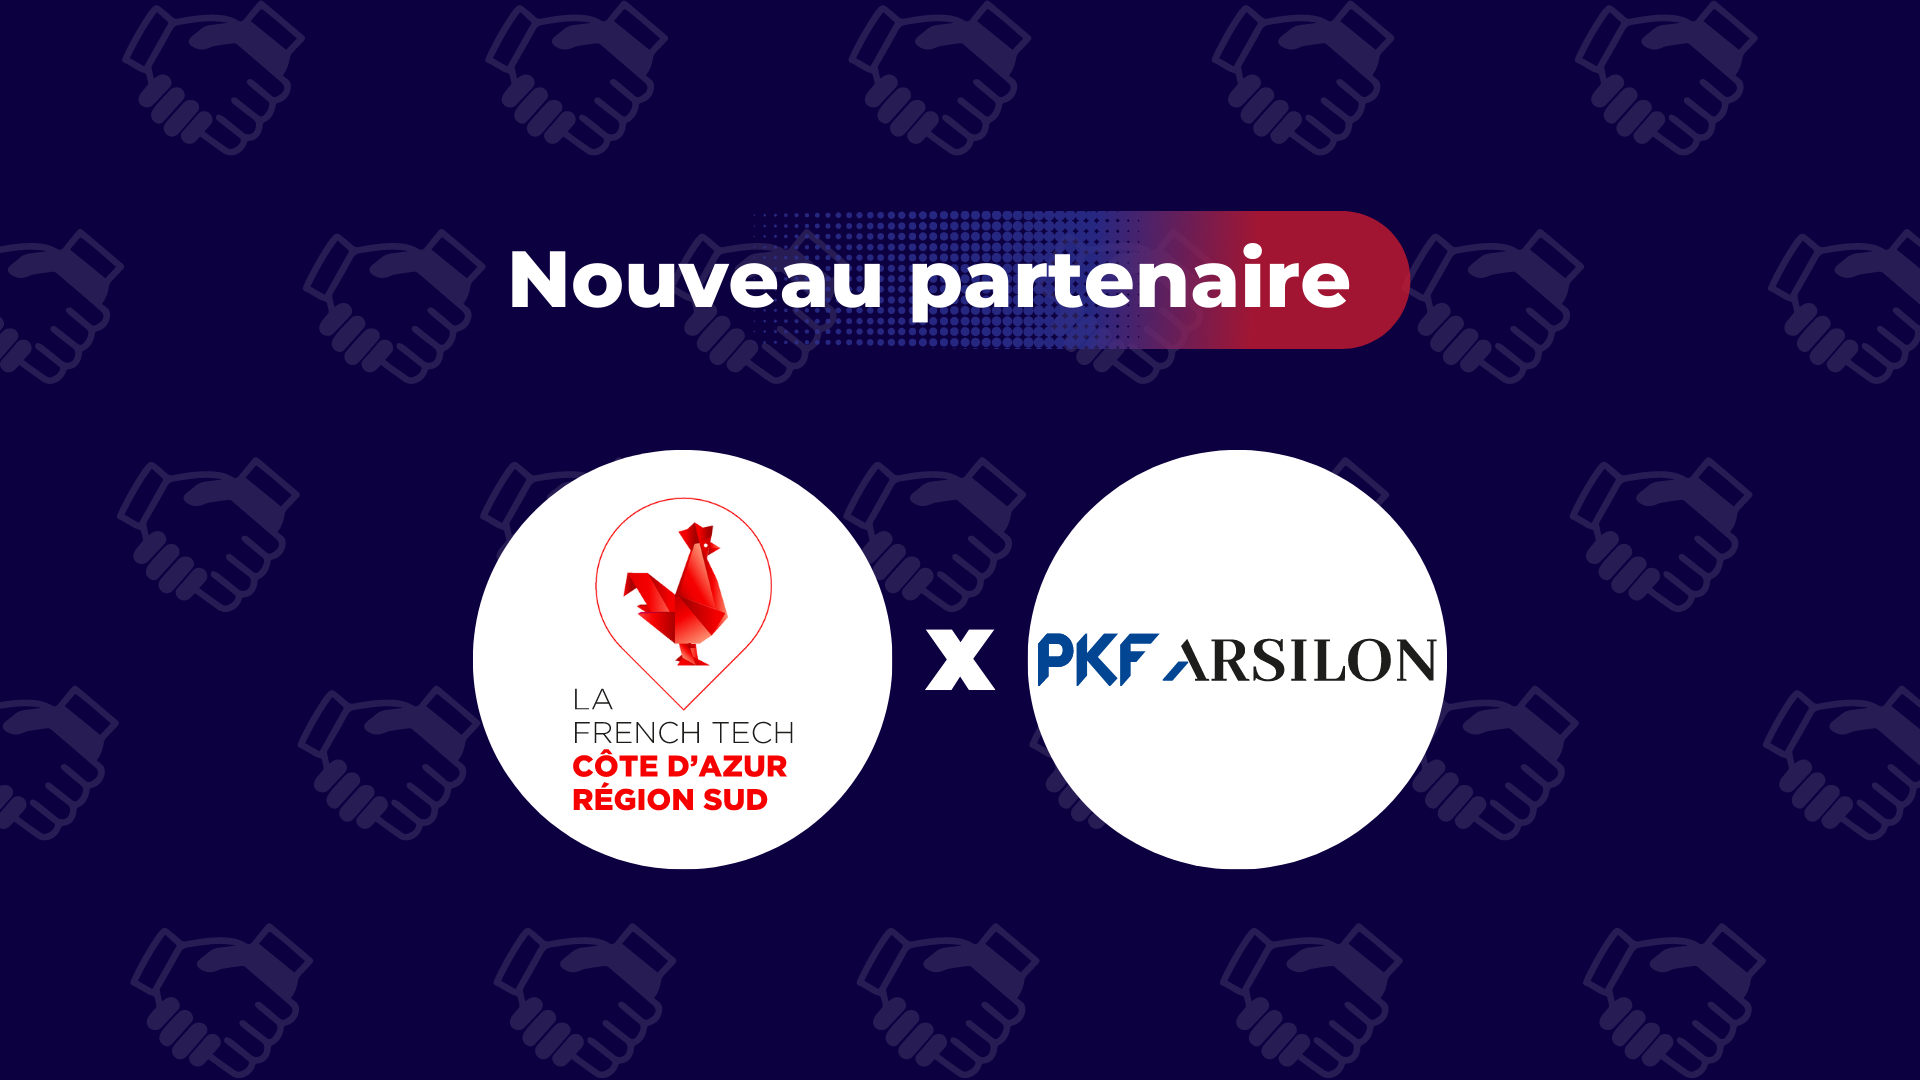 Nouveau partenaire PKF Arsilon